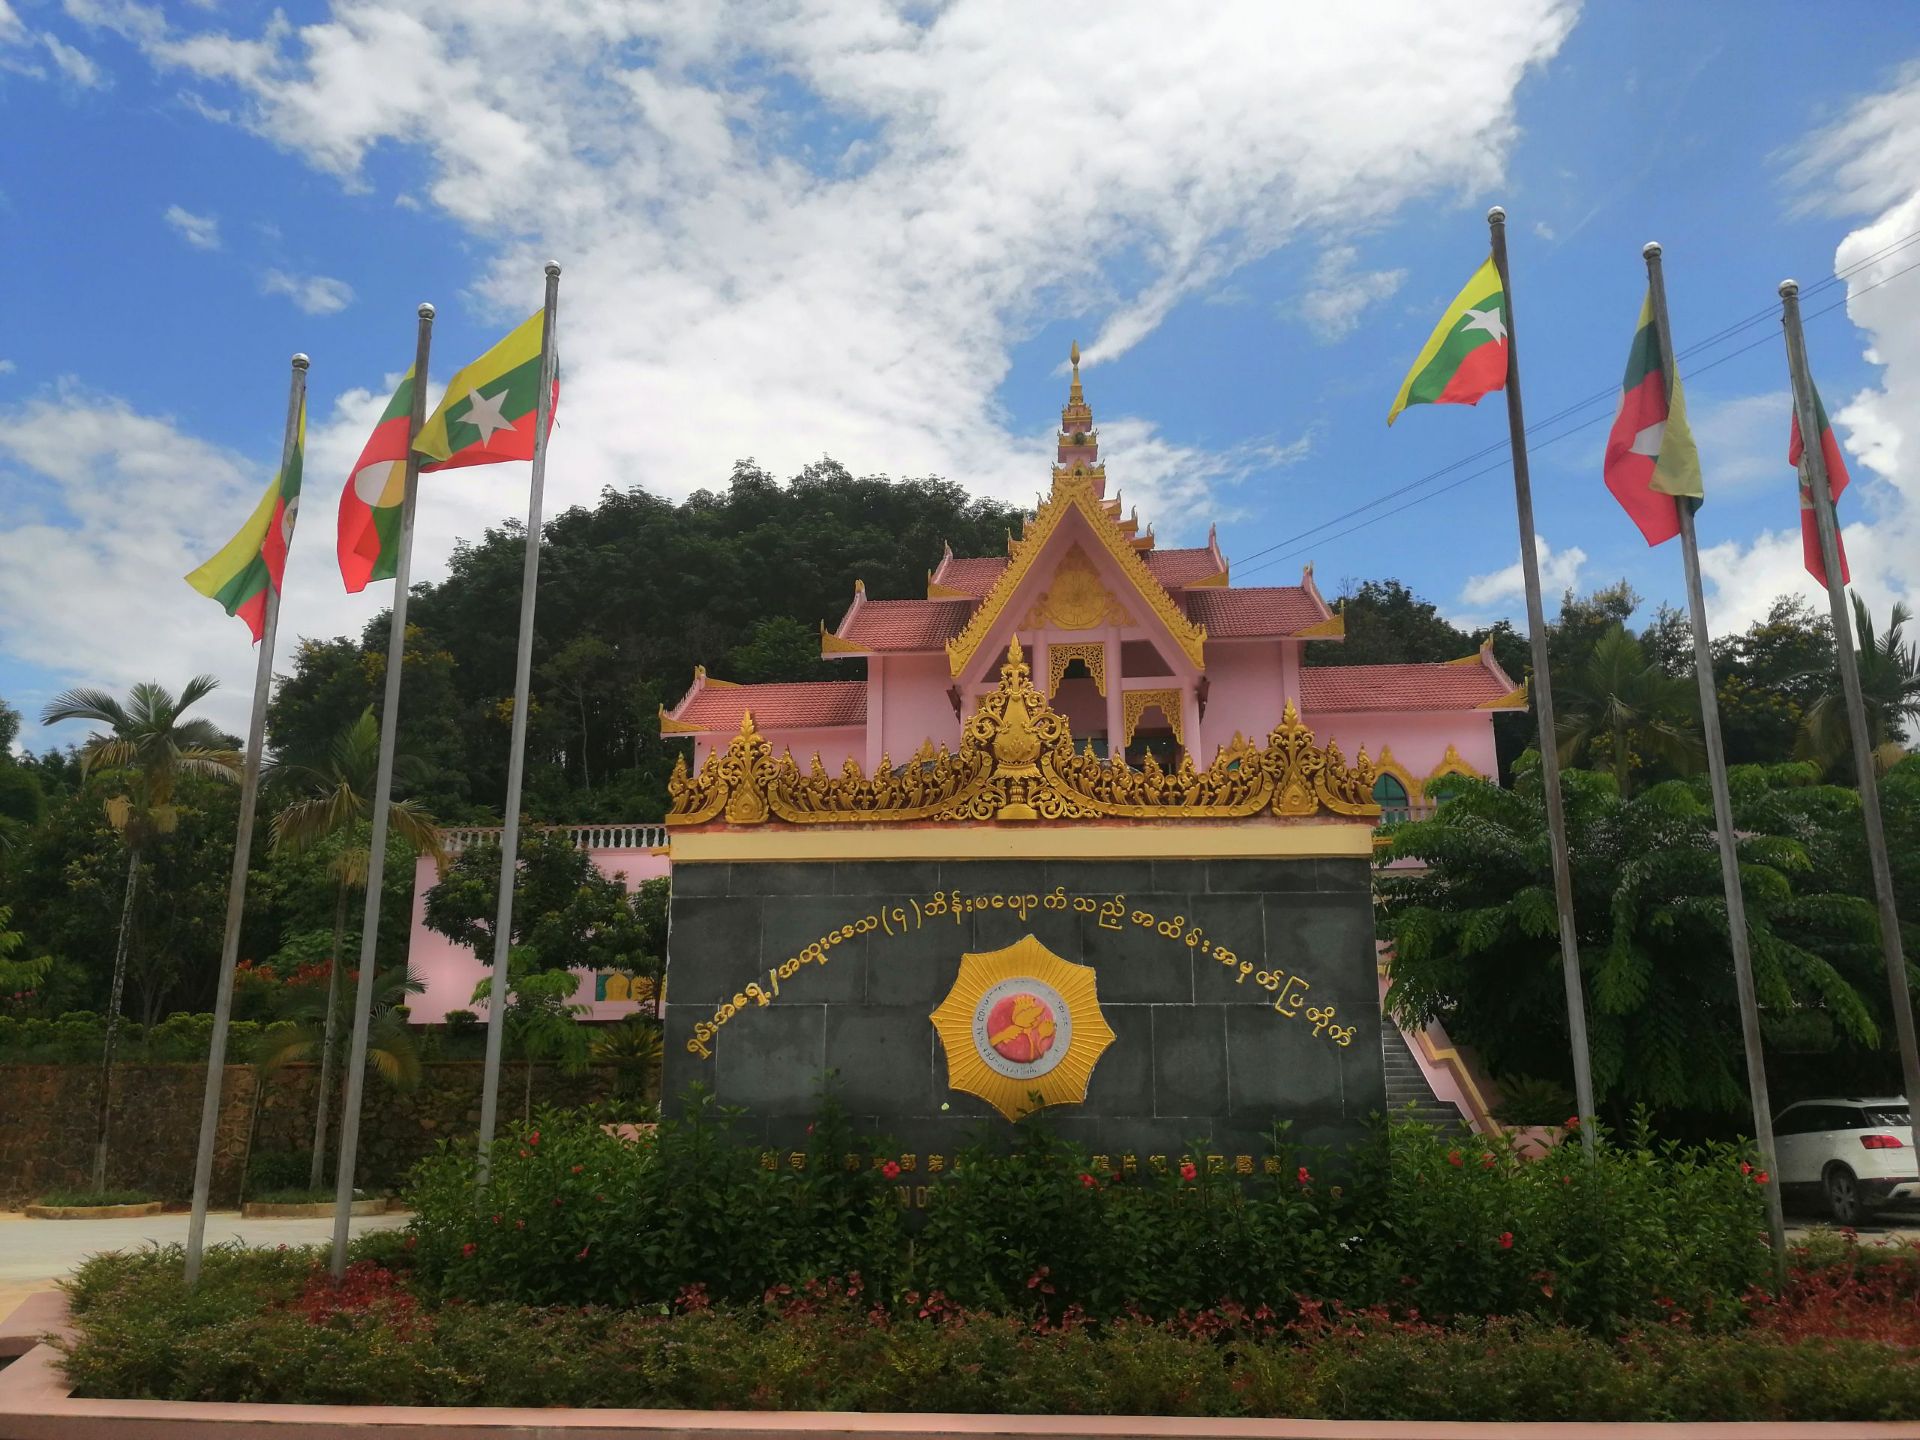 缅甸4大特区图片